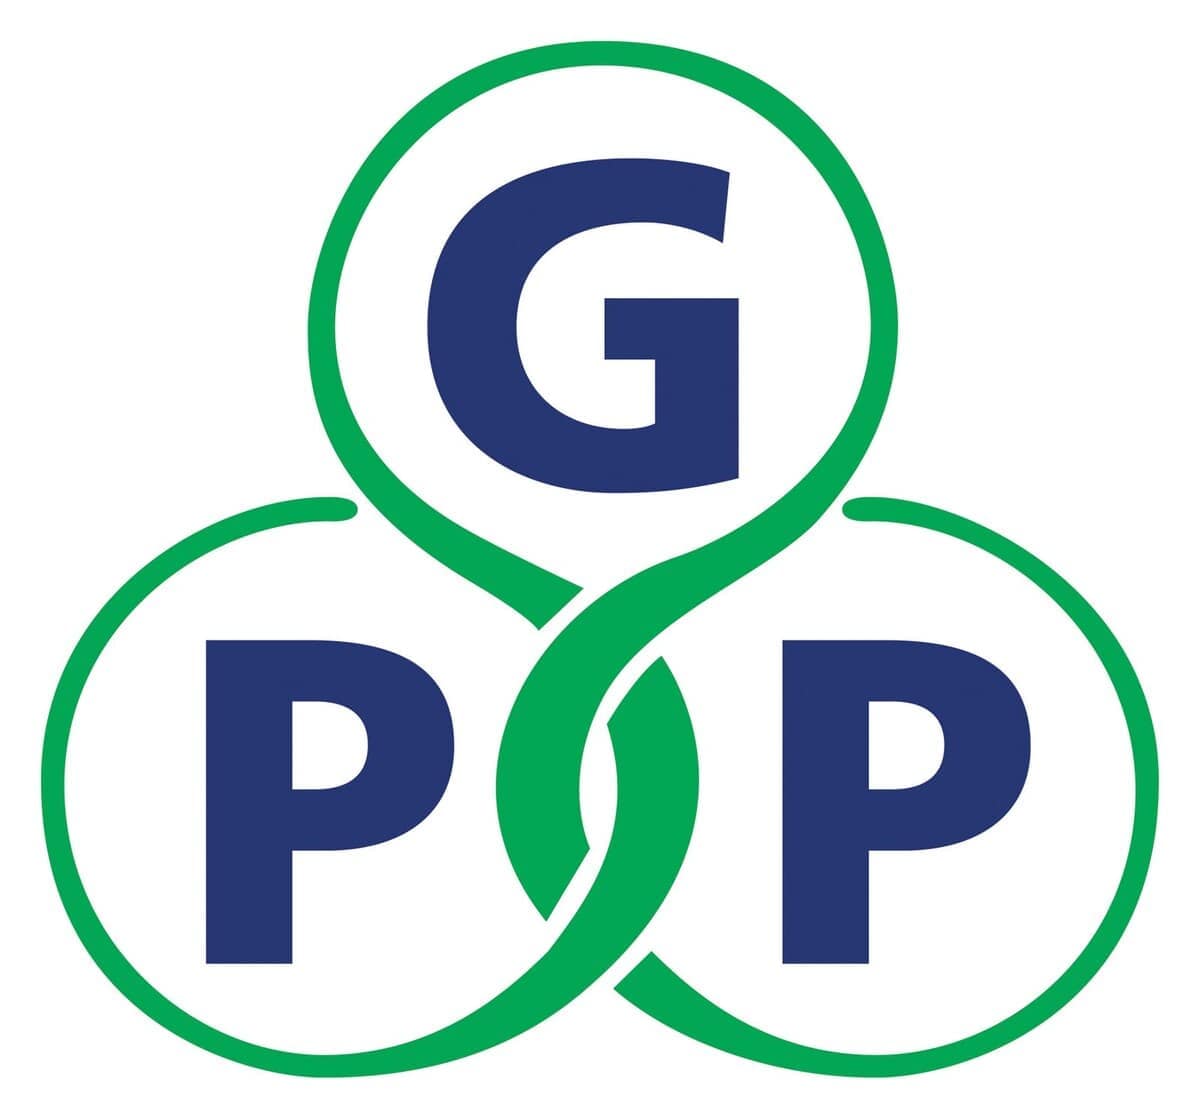 Hồ sơ xin cấp chứng nhận đạt chuẩn thực hành nhà thuốc đạt chuẩn GPP